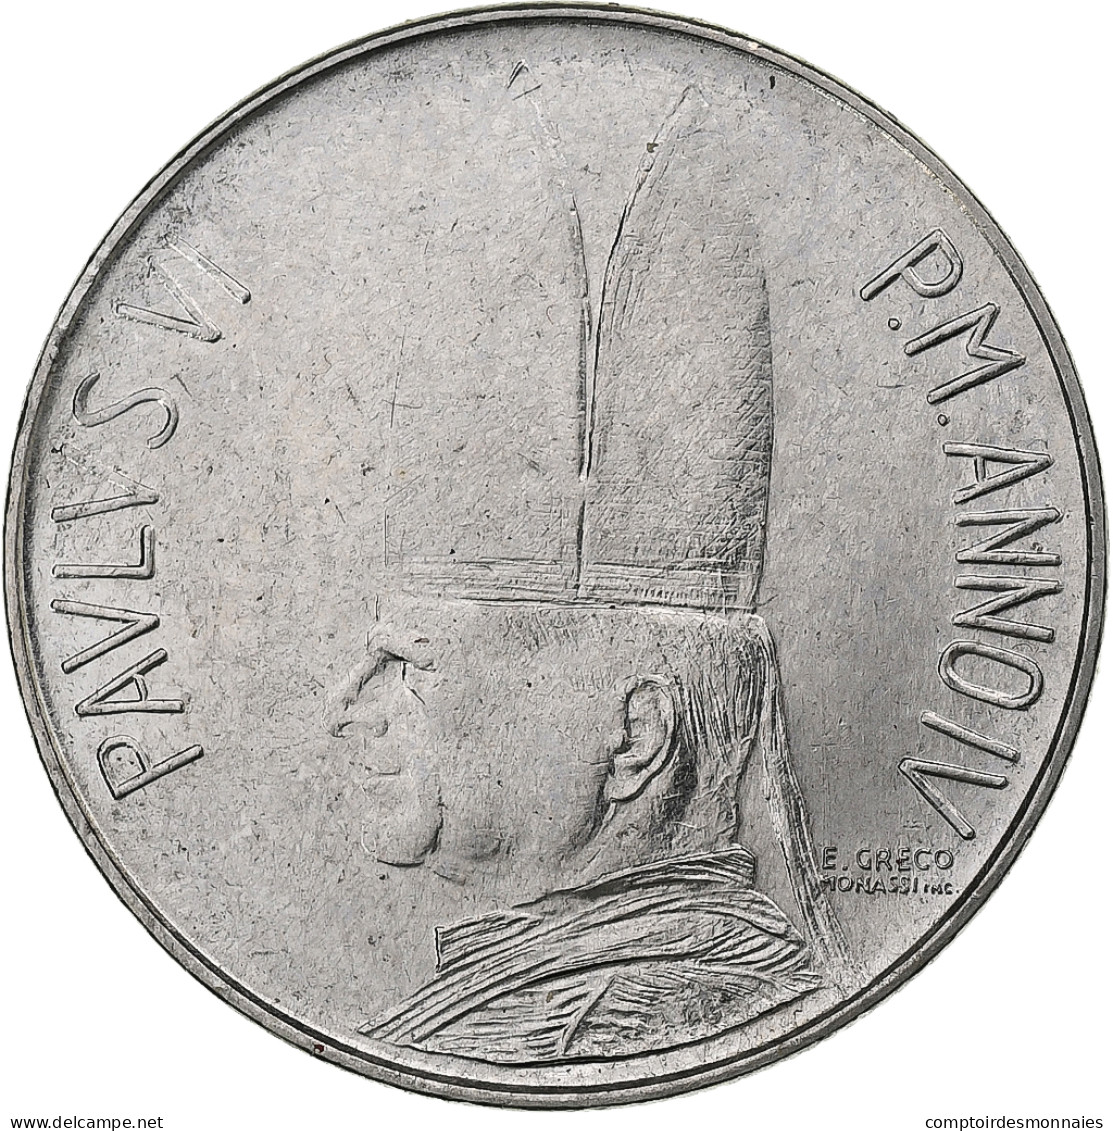 Vatican, Paul VI, 100 Lire, 1966 - Anno IV, Rome, Acier Inoxydable, SPL+, KM:90 - Vatican